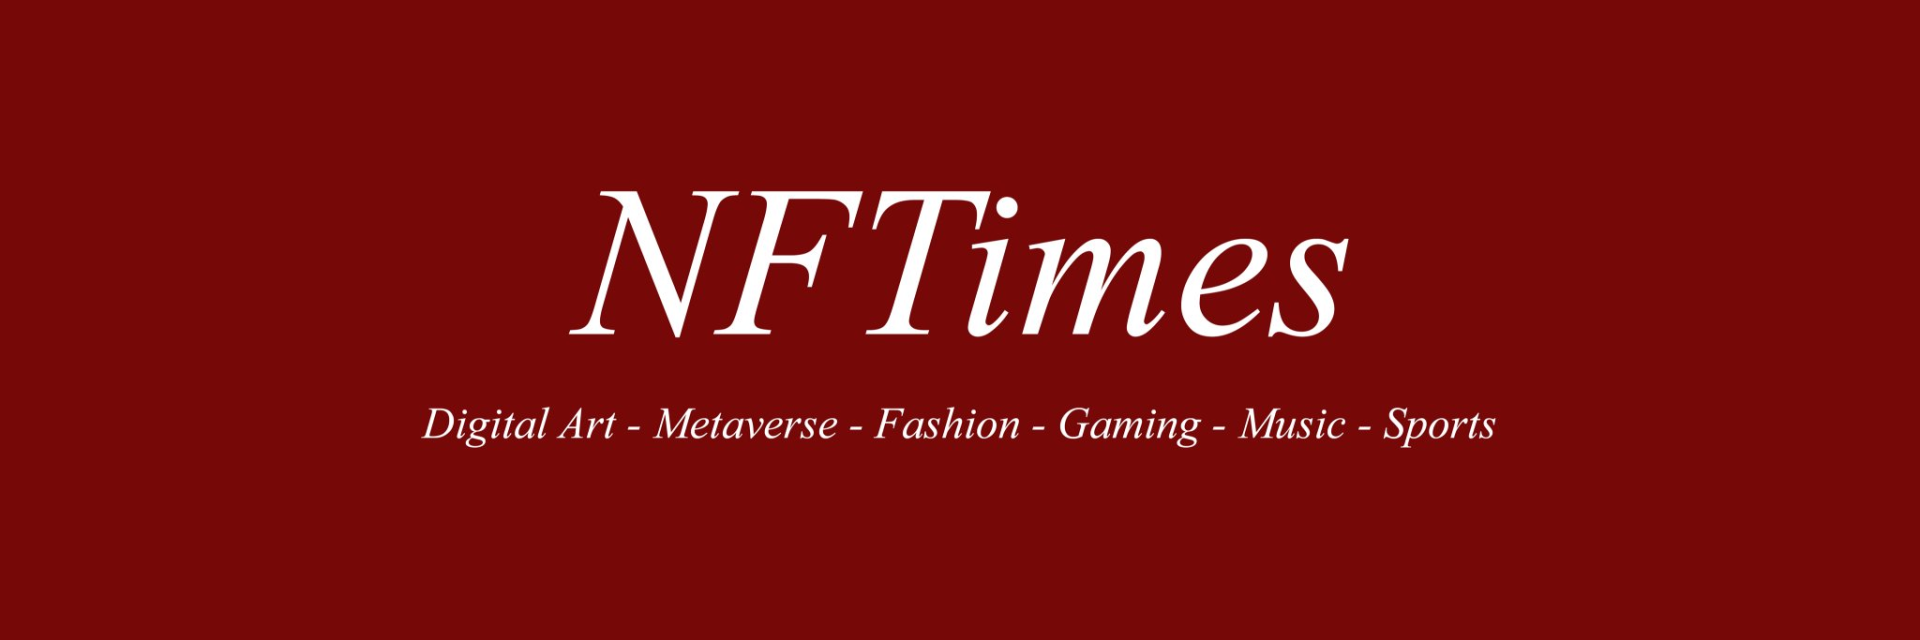 NFTimes2021#16 | 迪士尼加入NFT宇宙